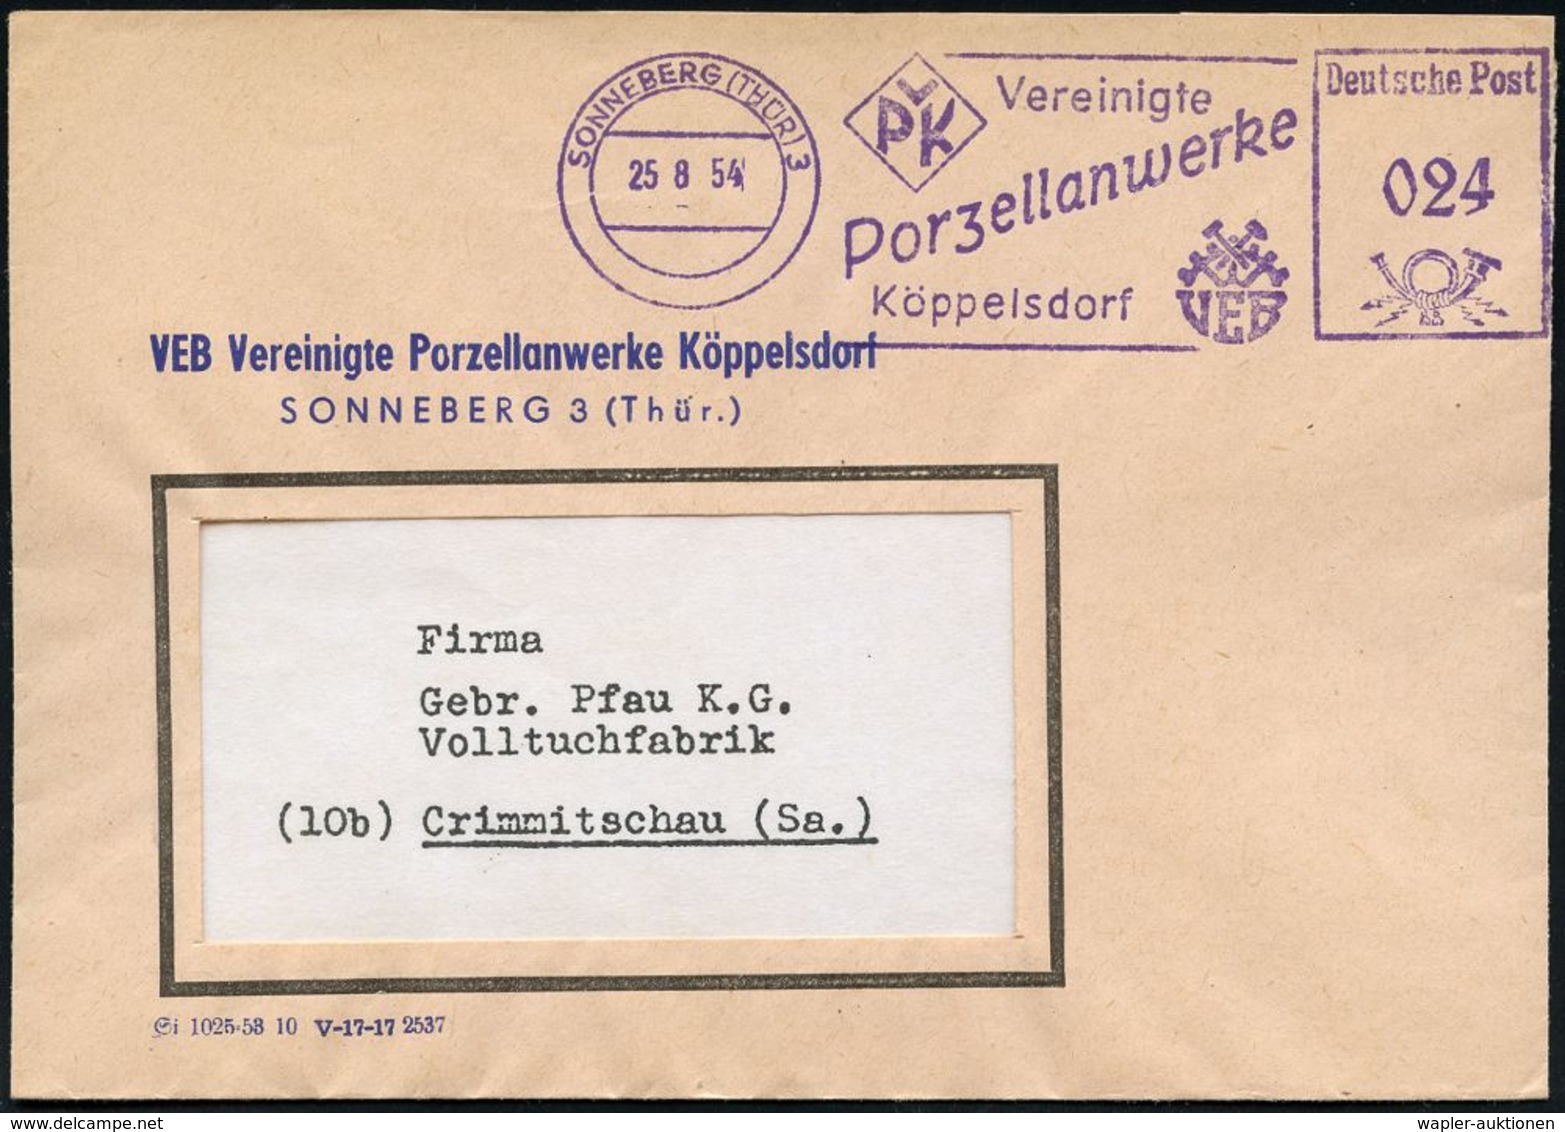 KERAMIK / PORZELLAN / MANUFAKTUREN : SONNEBERG (THÜR) 3/ VPK Vereinigte/ Porzellanwerke/ Köppelsdorf 1954 (25.8.) L I L  - Porcelaine